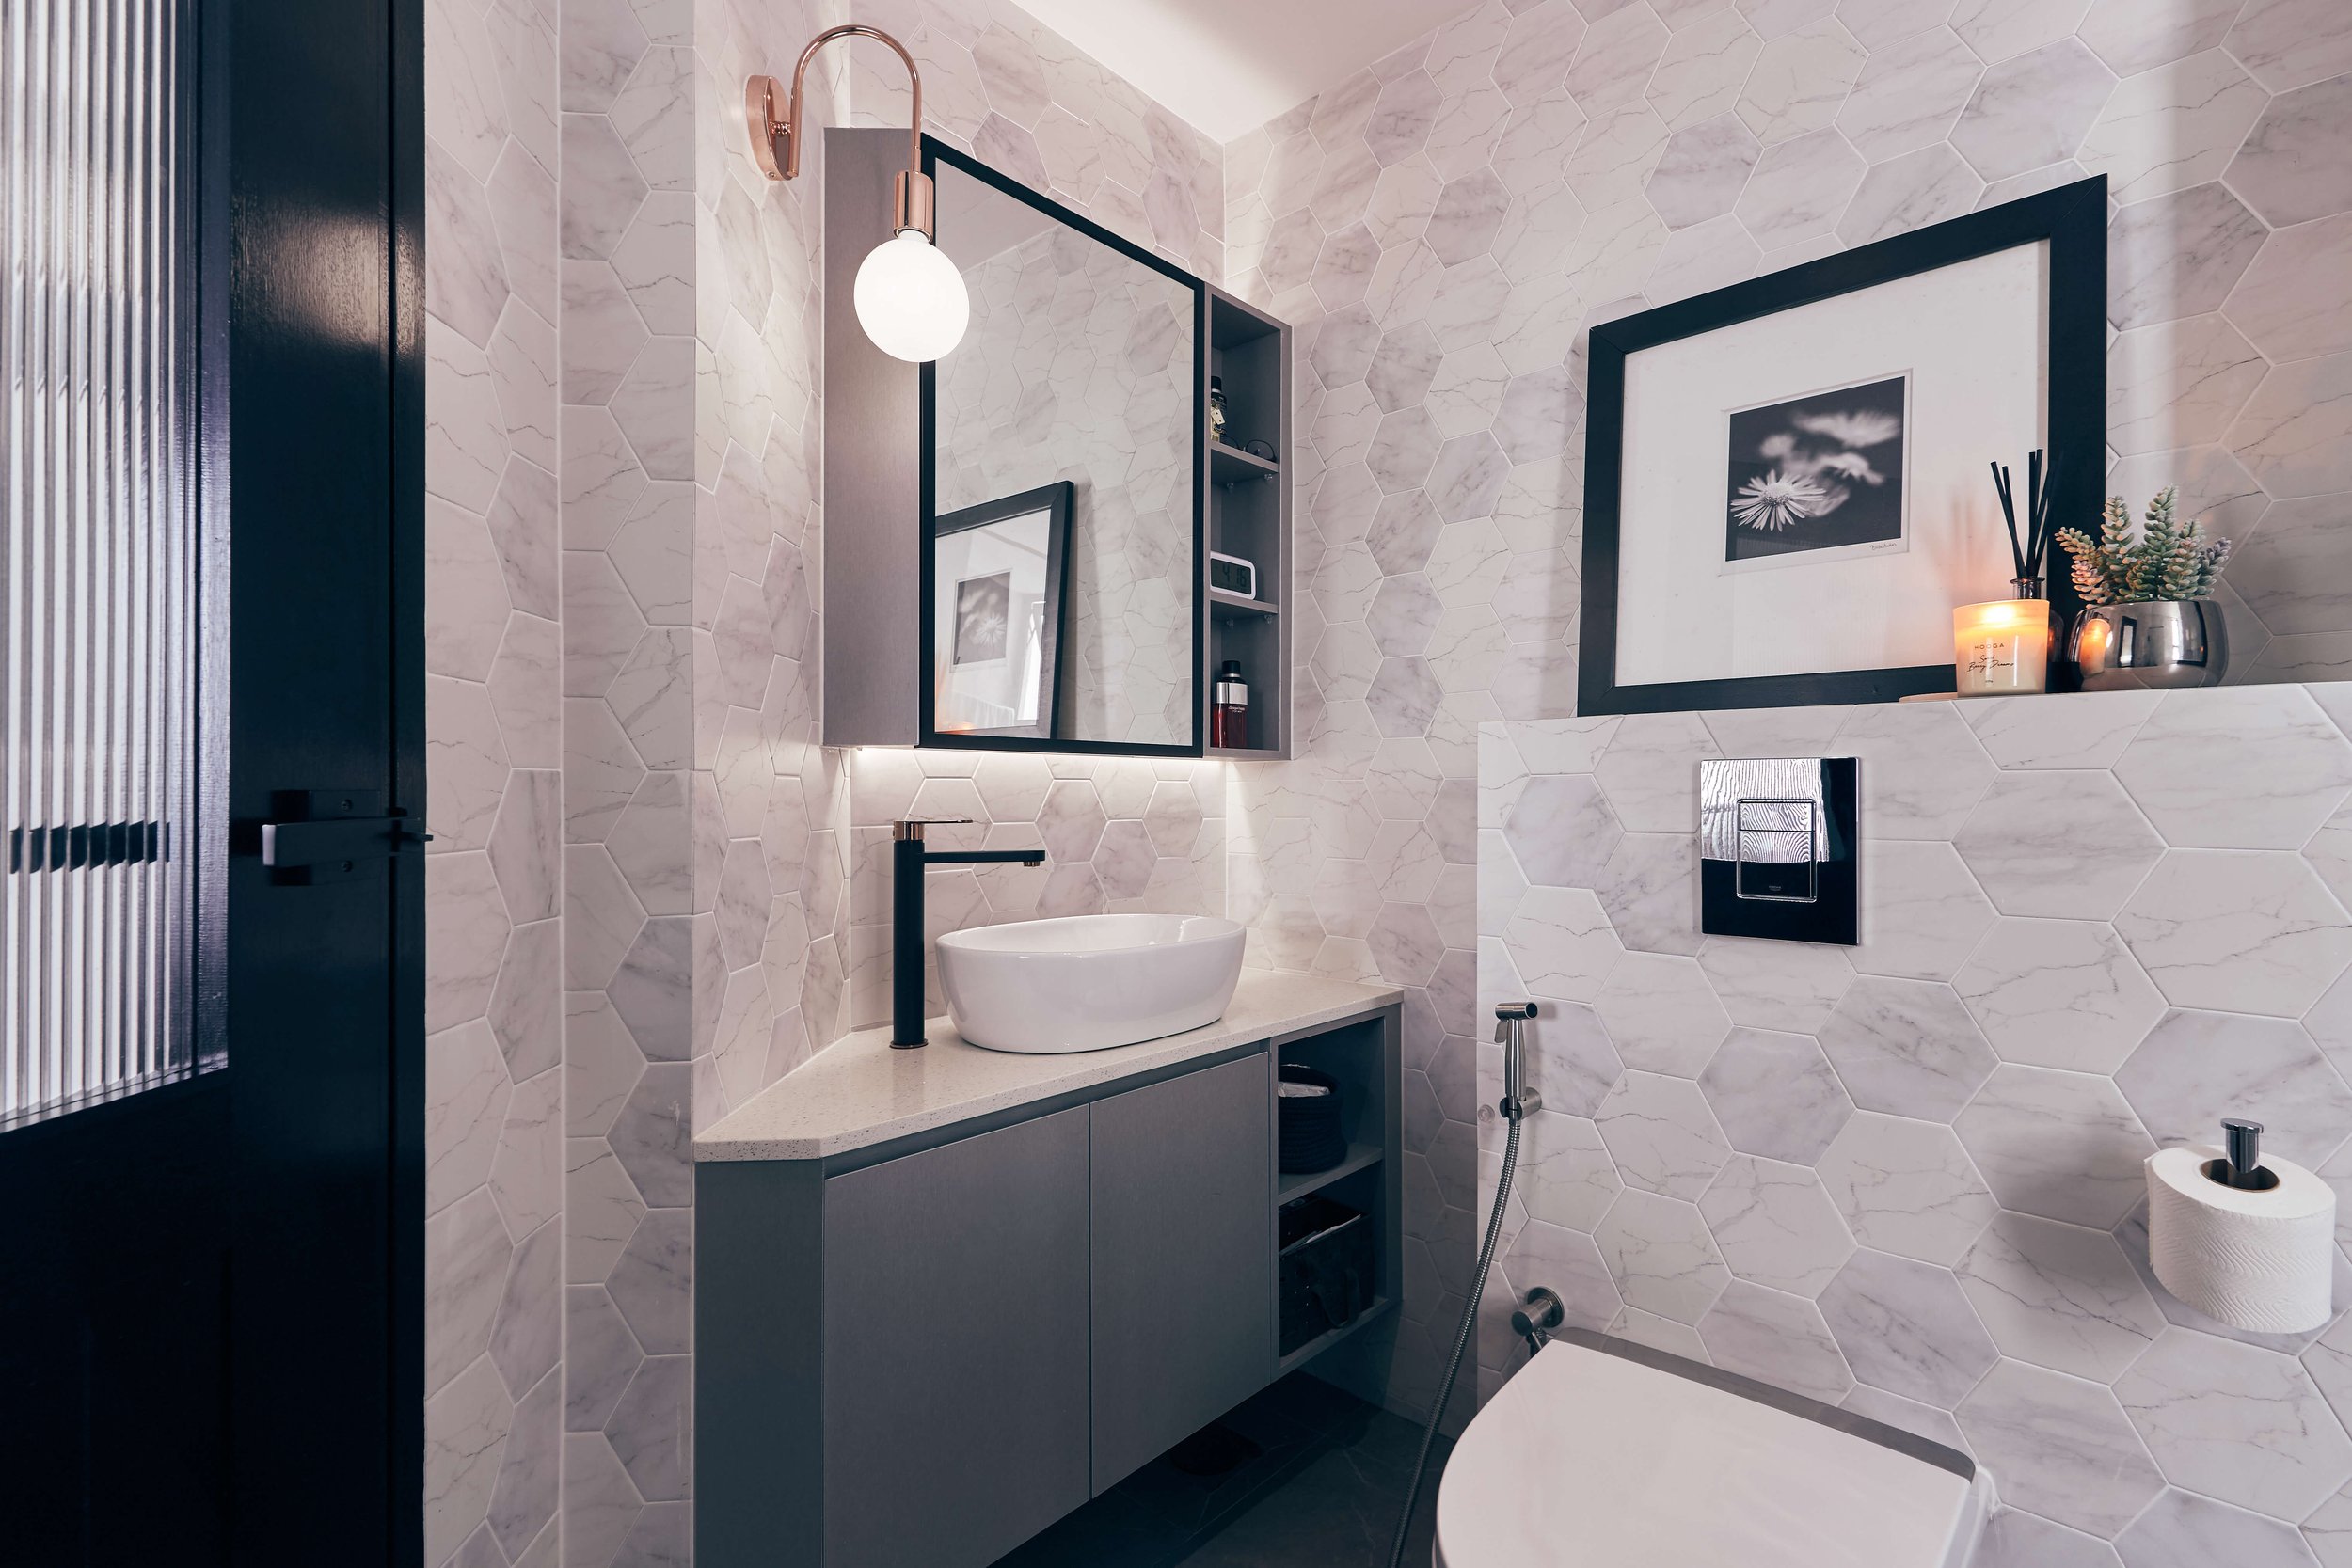 https://images.squarespace-cdn.com/content/v1/579f7a4b414fb56dff13bc9f/a2e65822-b6e0-4b06-ace3-63d345820829/sleek-modern-bathroom-design-singapore.jpg